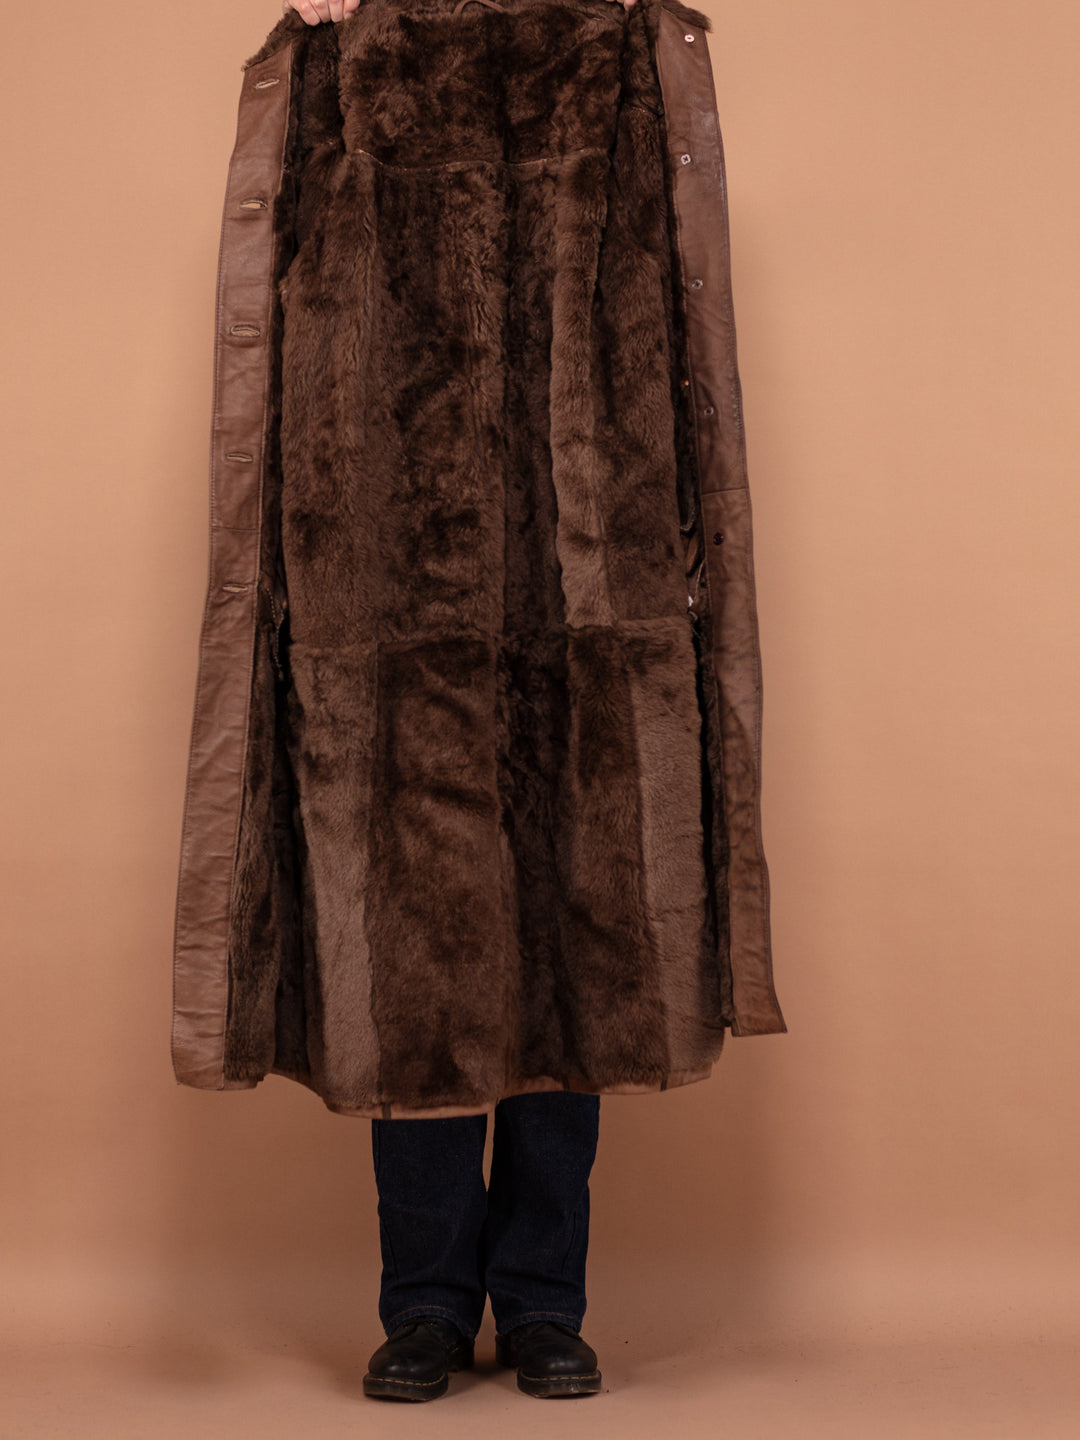 Sheepskin Long Coat, Size Large XL Warm Shearling Fur Coat, Brown Sheepskin Overcoat, Oversized Sheepskin Coat, Penny Lane, Winter Outerwear